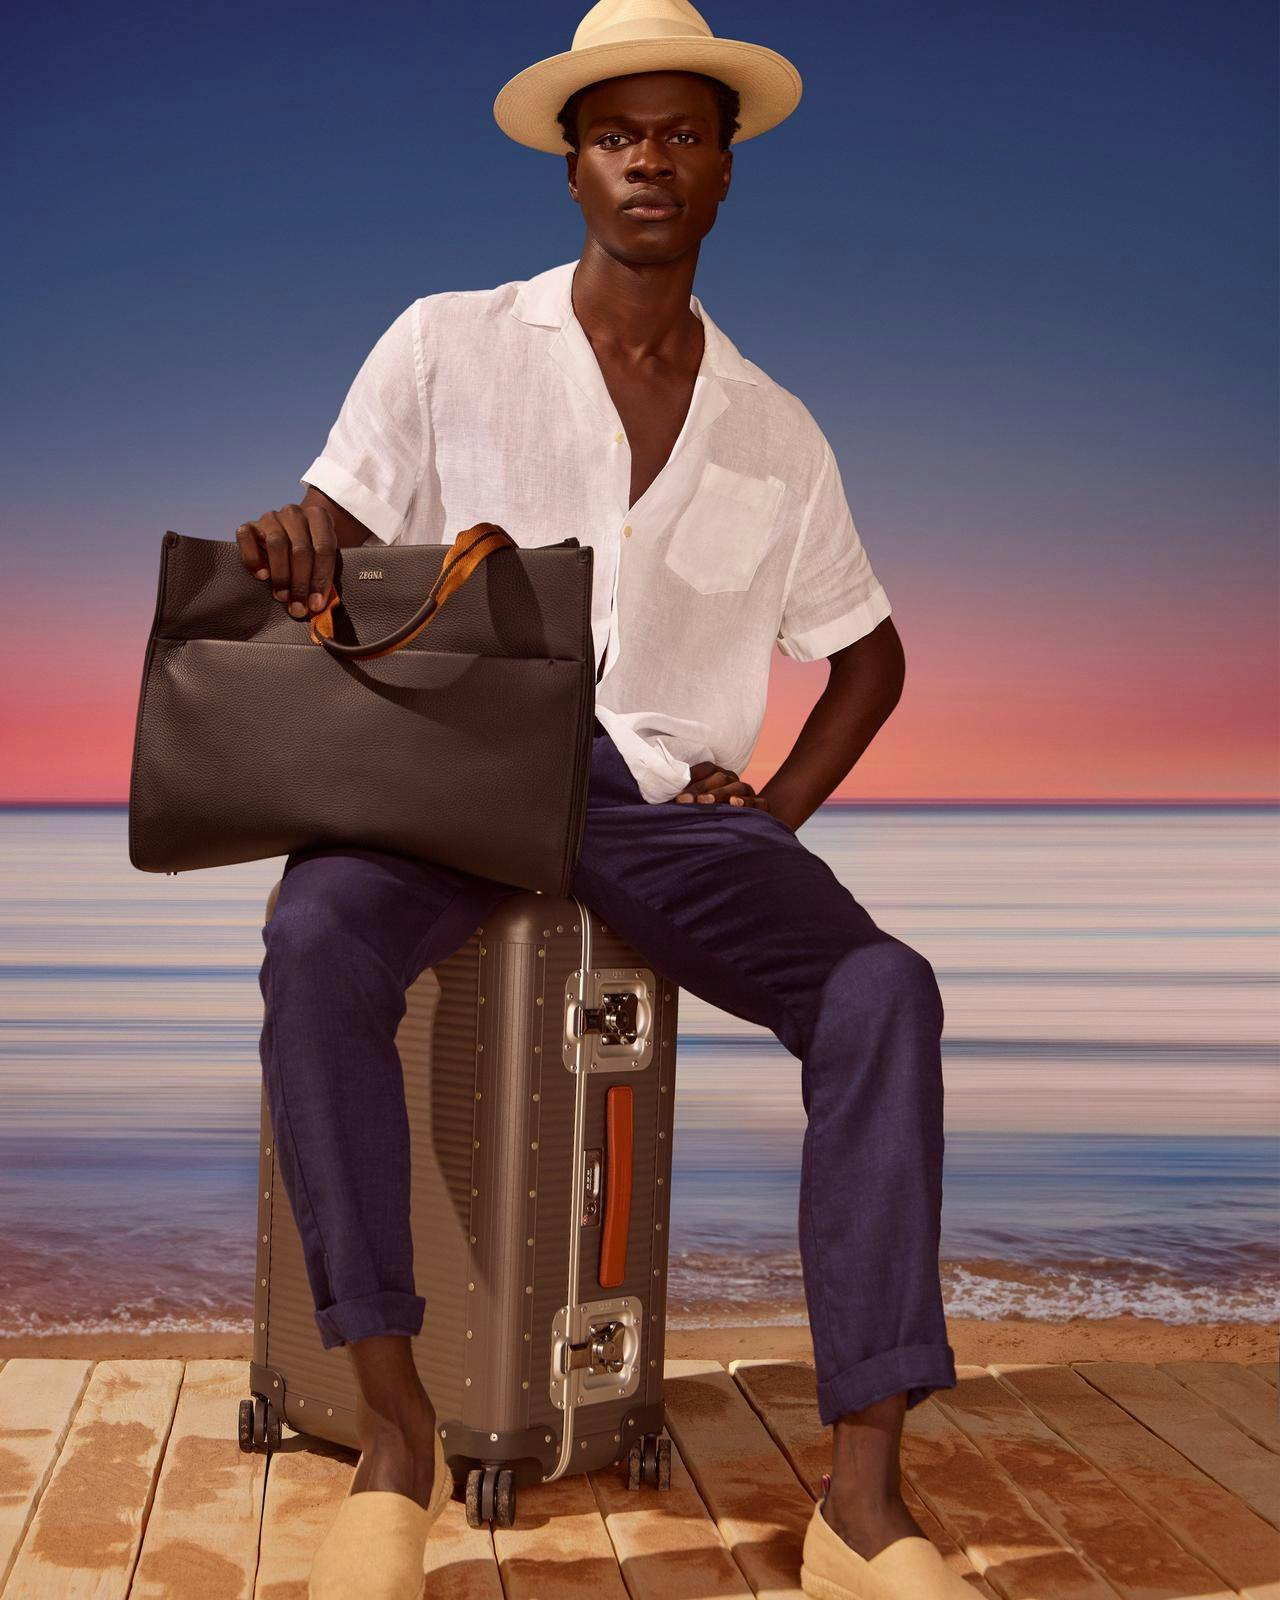 Un homme assis sur une valise avec une mallette à la main.